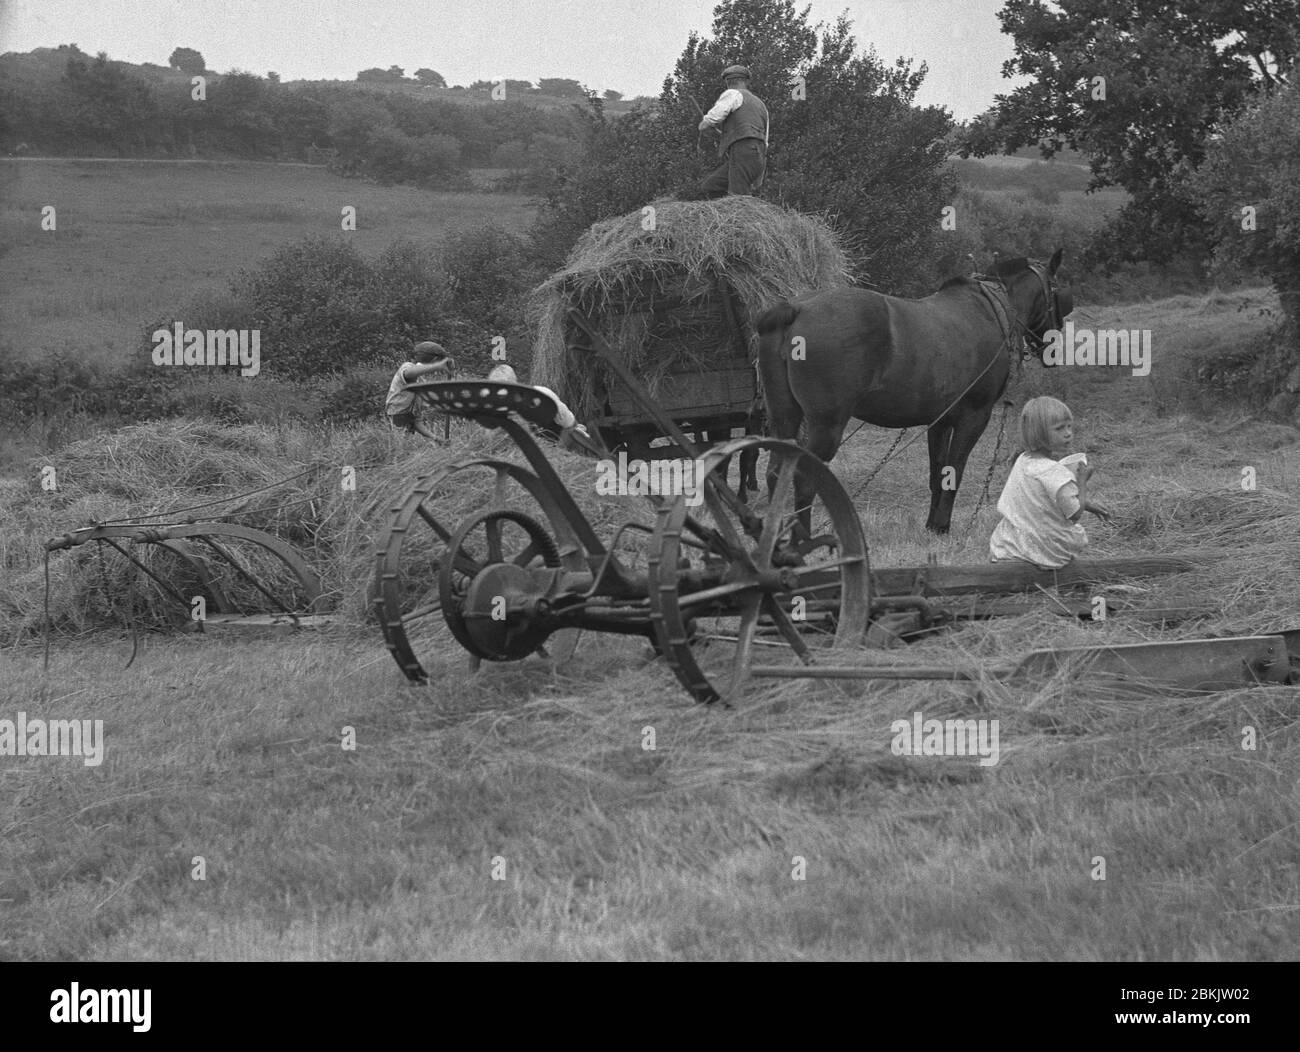 1930er Jahre, historisches Bild, in den Hügelketten bei Dartmoor, in Chagford, Devon, arbeiten zwei Bauern draußen auf einem Feld, sammeln Heu in einem Holzwagen, mit einem kleinen Mädchen, einer Bauernmädchen, die auf den Holzbeinen des zweisäckigen Anbaugerätes sitzt. In dieser Zeit war das Stapeln von Heu auf den Wagen zeitaufwendige, schwere körperliche Arbeit, aber wichtig für das Winterfutter für die Nutztiere des Hofes. Stockfoto